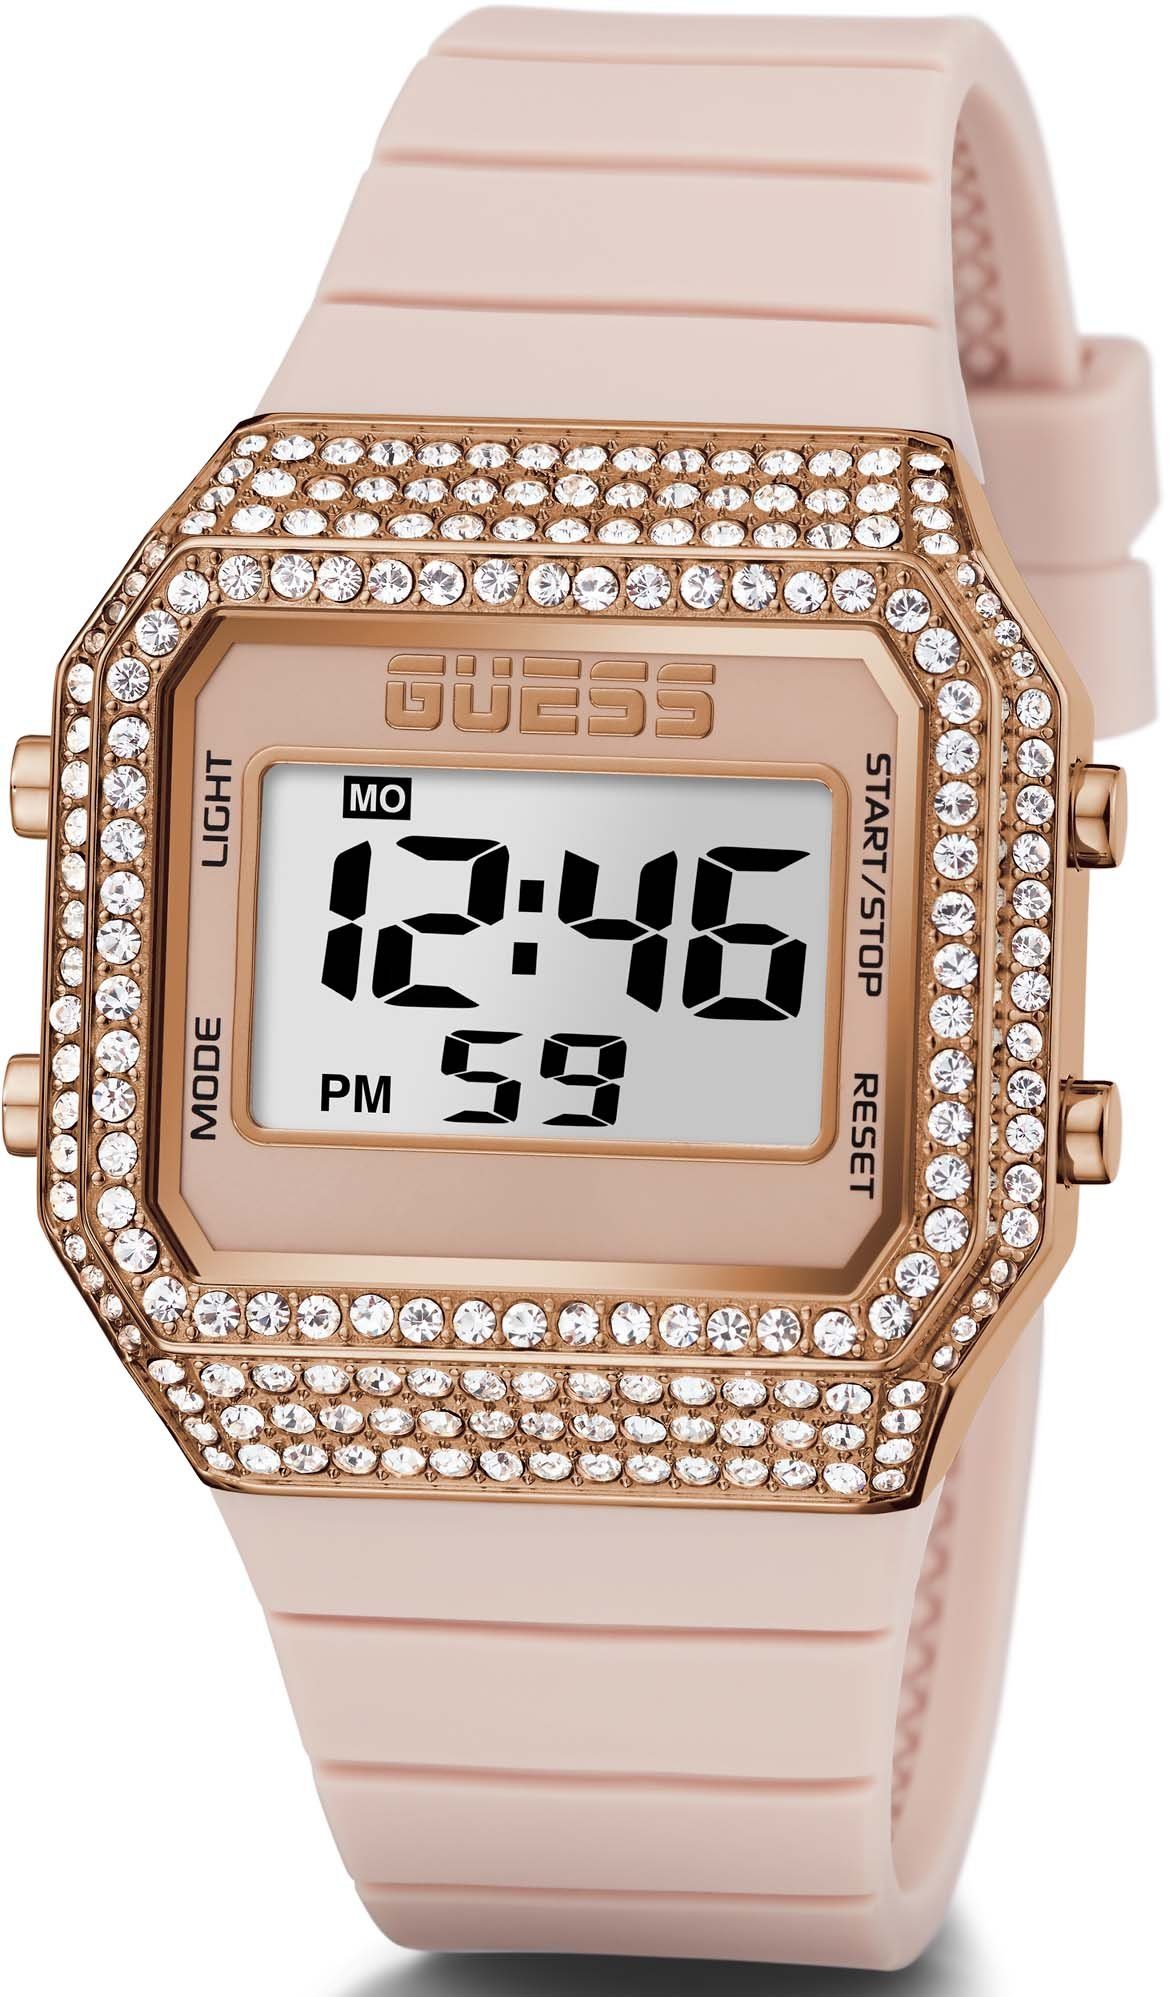 Damen Uhren Guess Digitaluhr GW0430L3